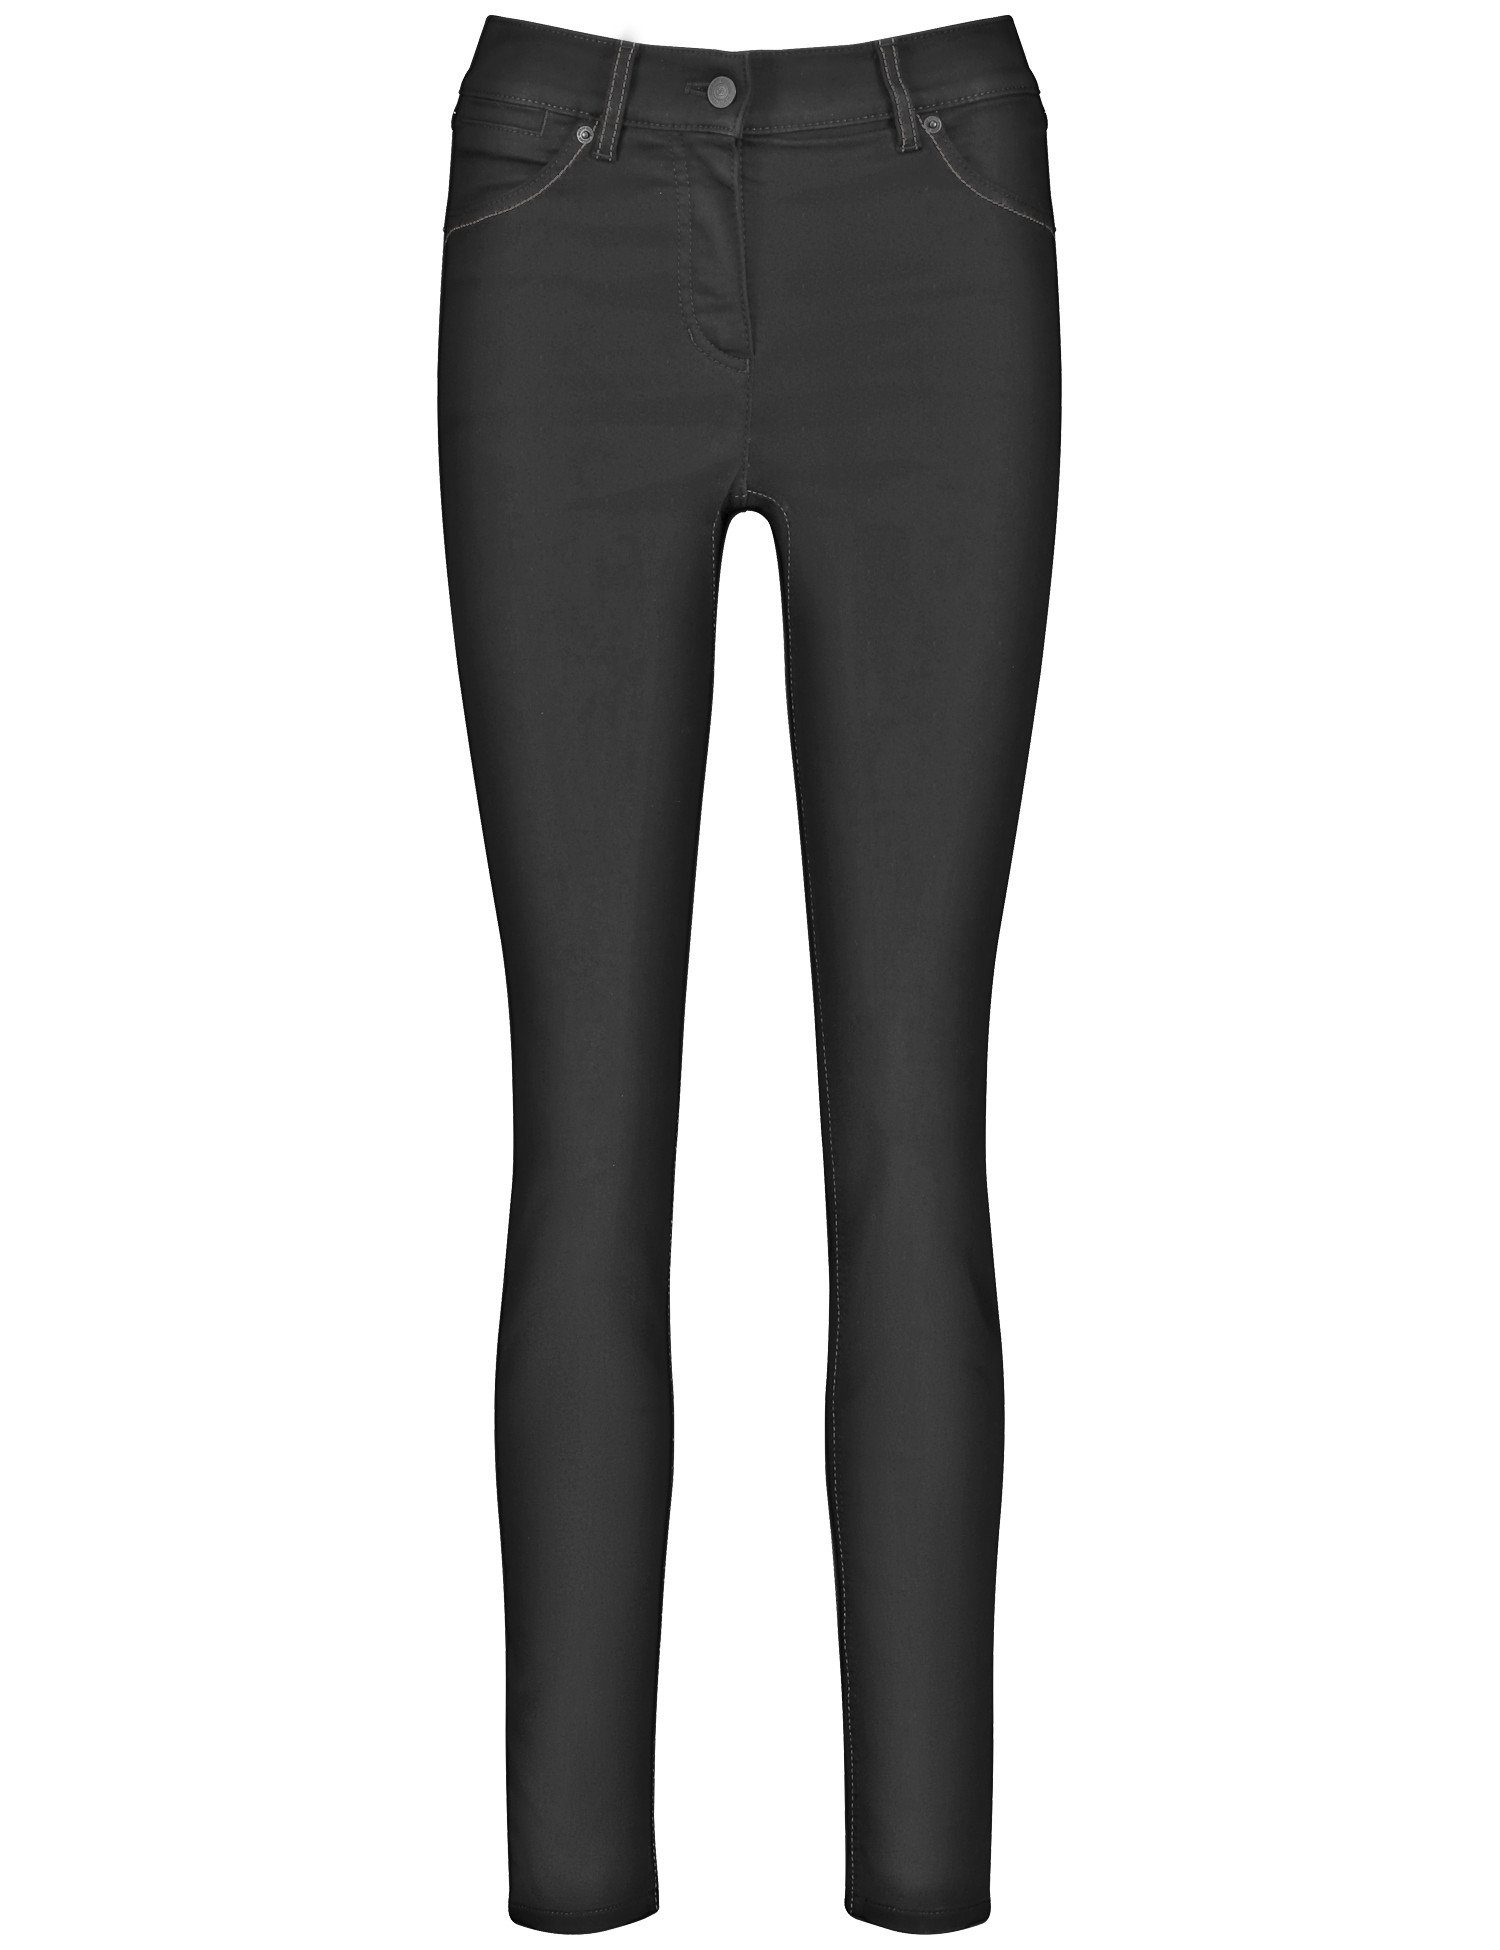 GERRY Stretch-Jeans Black Black Best4me Jeans Denim WEBER 5-Pocket Skinny